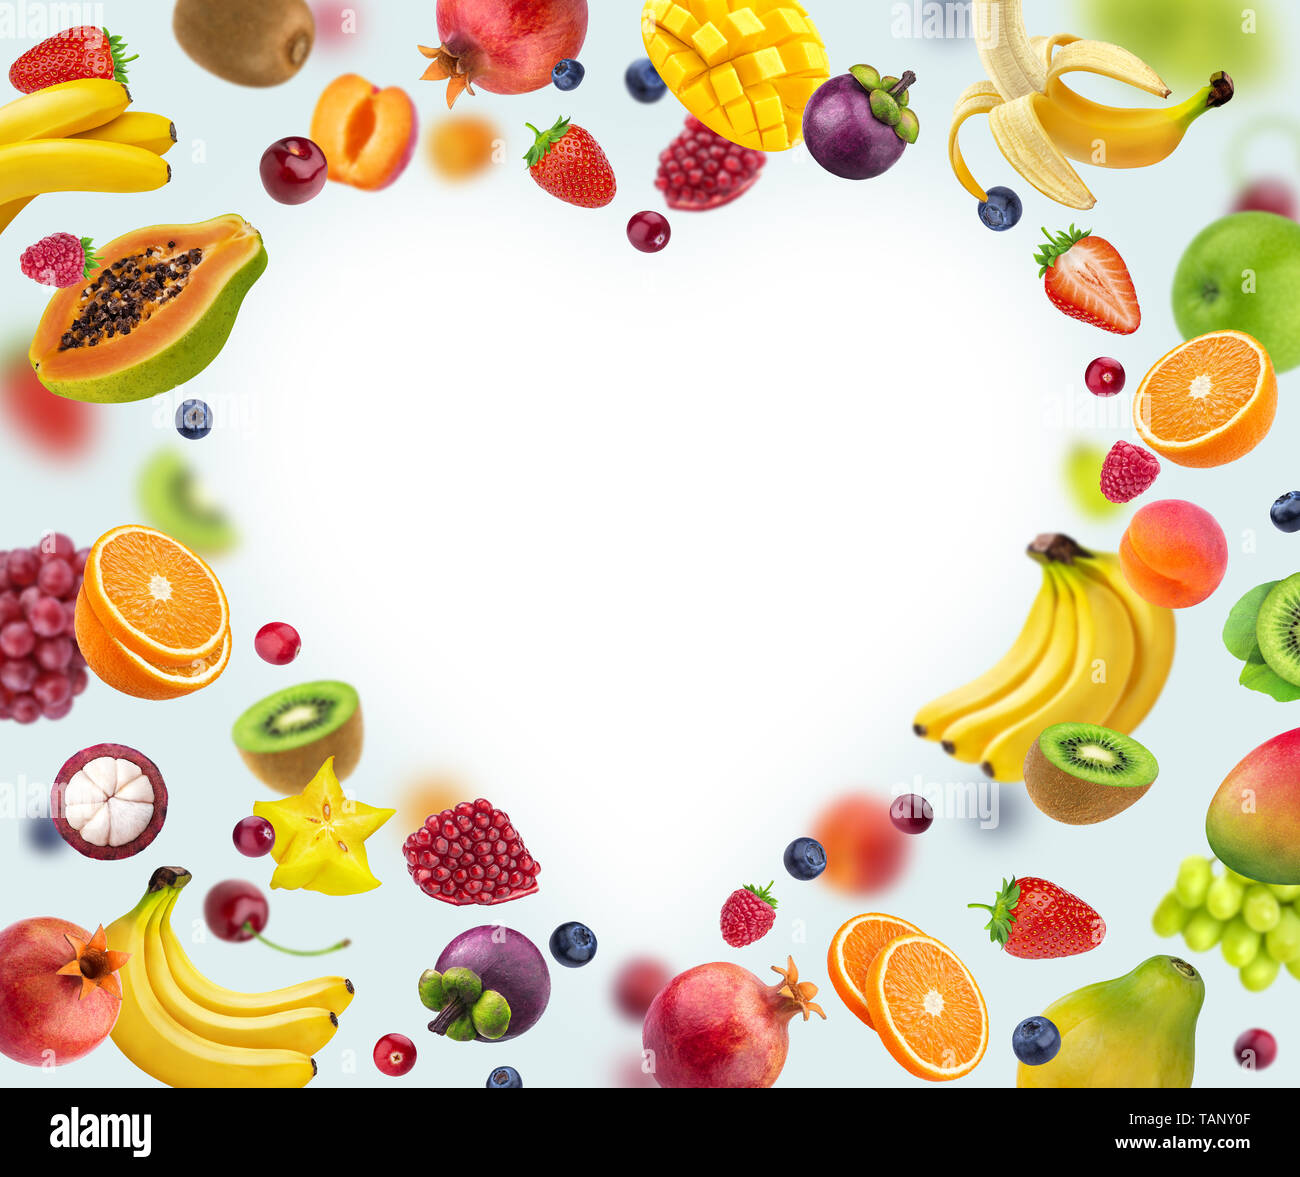 Forma di cuore cornice fatta di diversi tipi di frutta e bacche, isolati su sfondo bianco Foto Stock